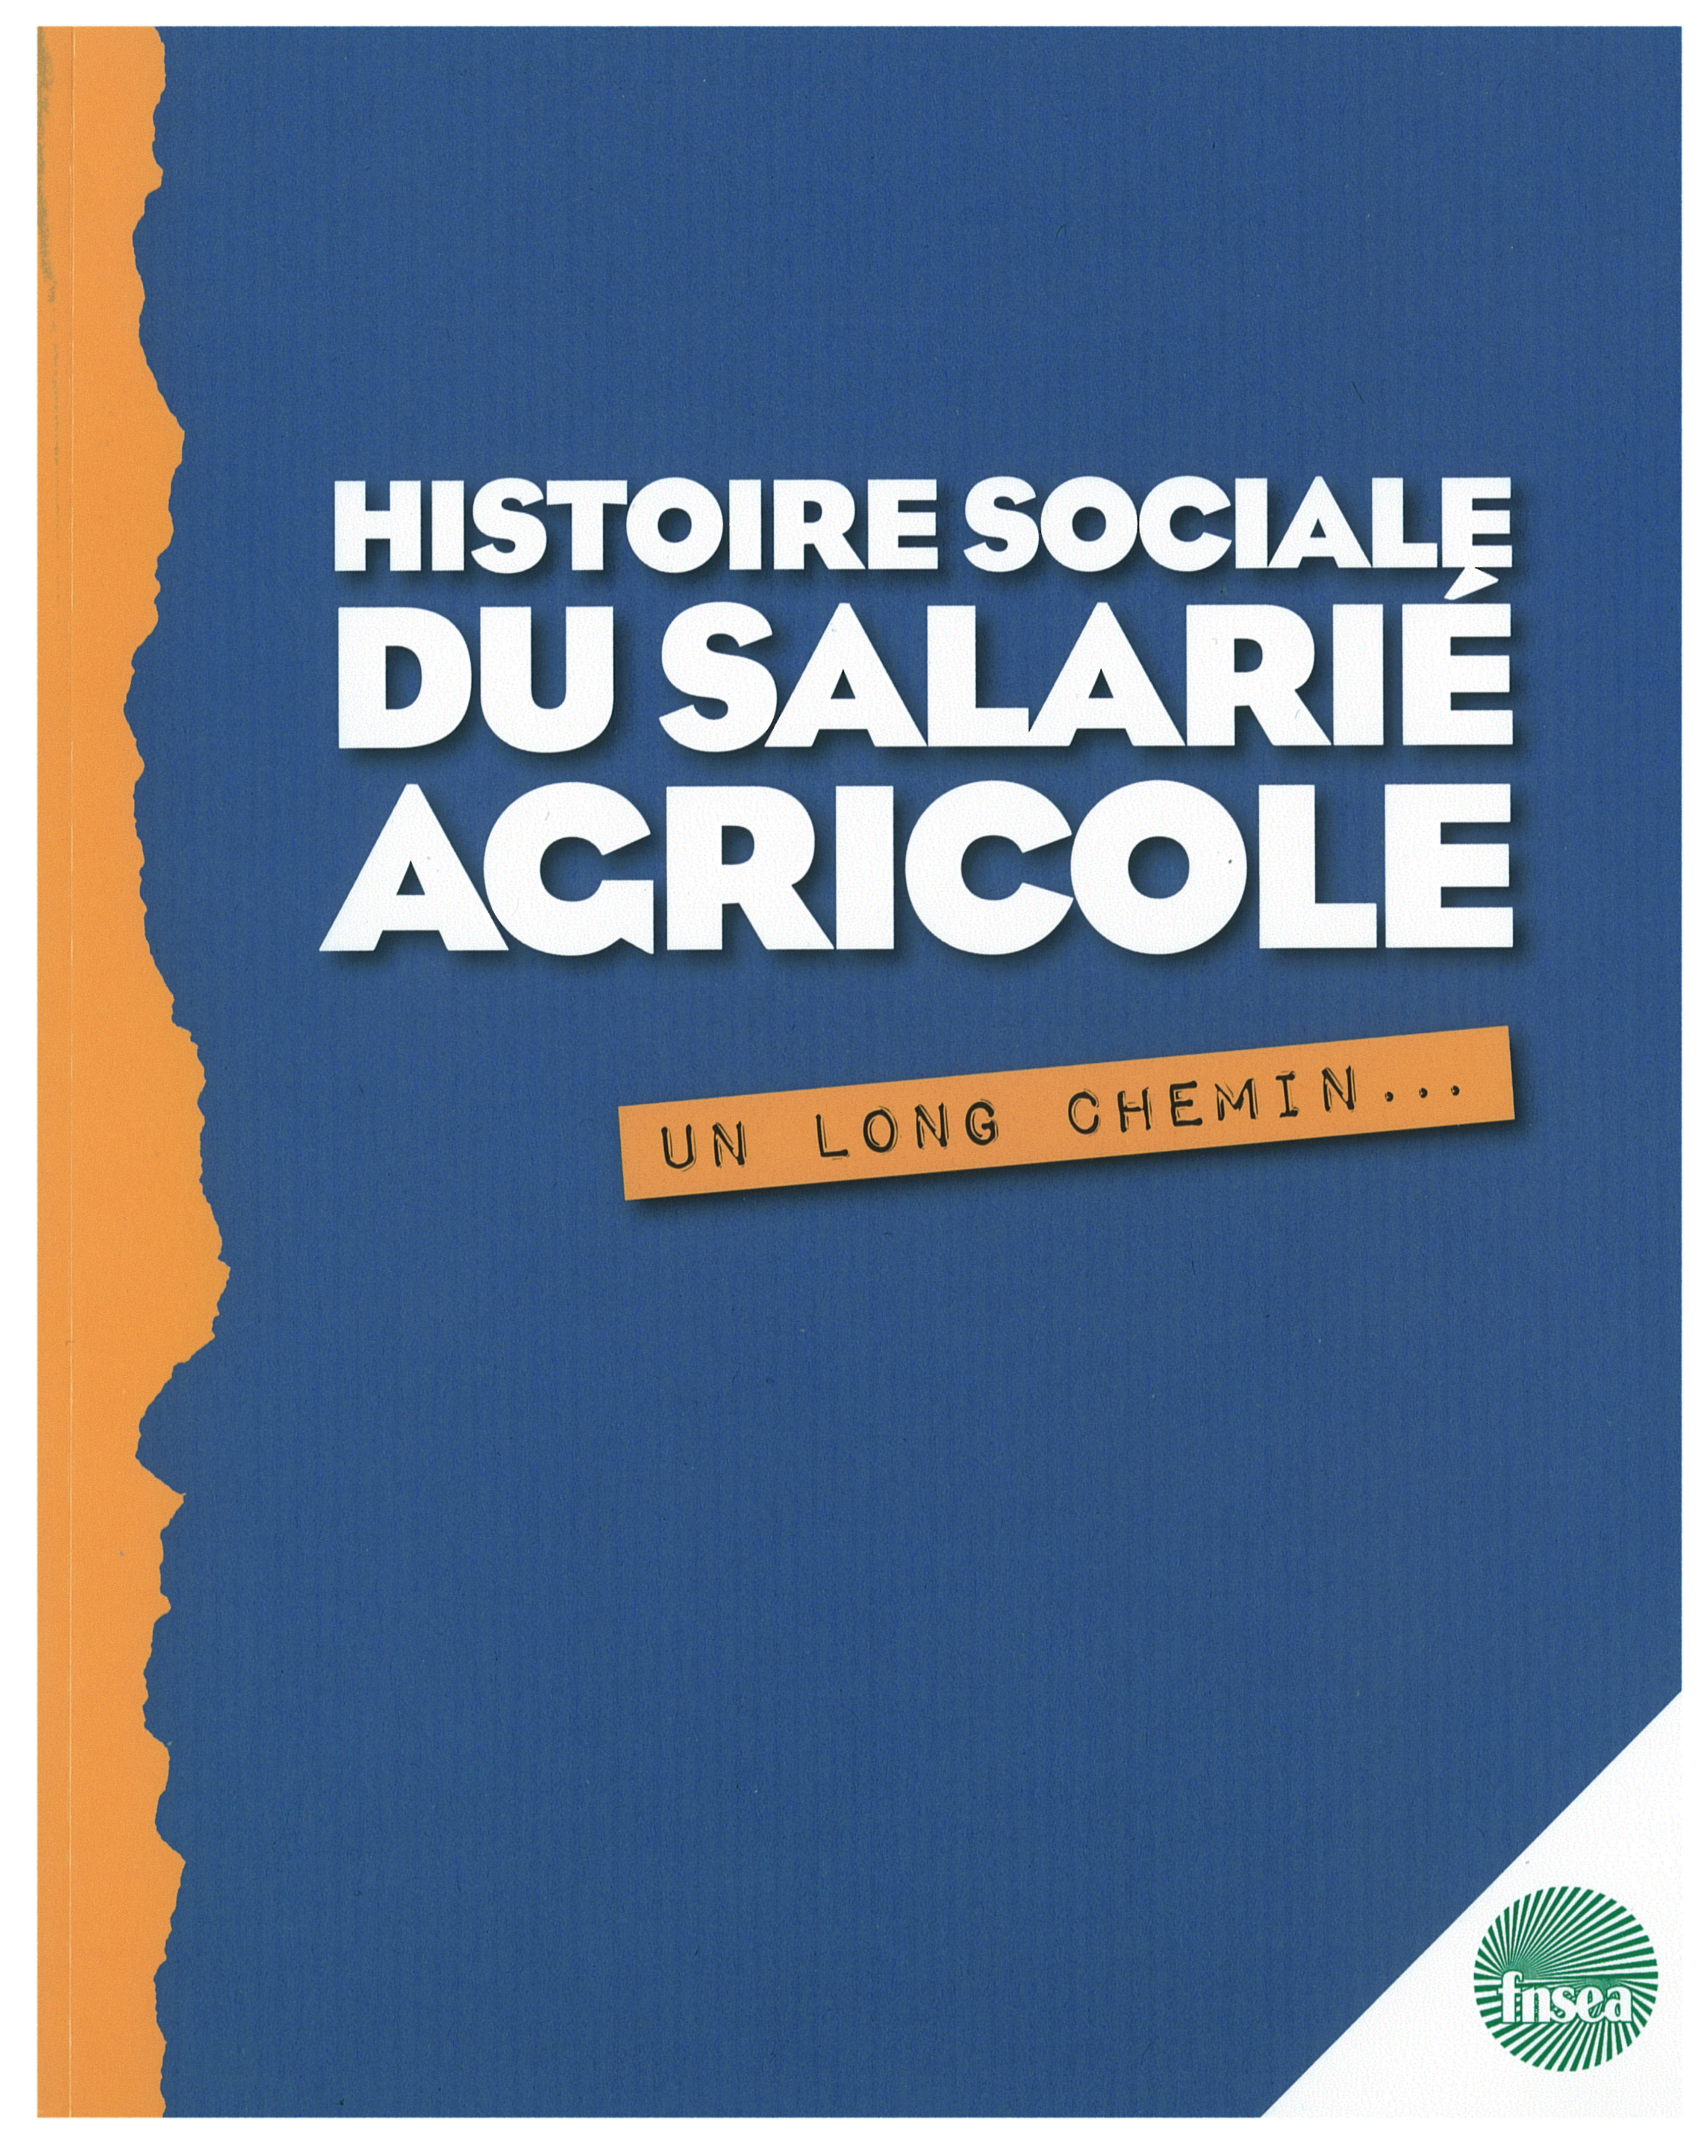 Histoire sociale du salarié agricole (2010)